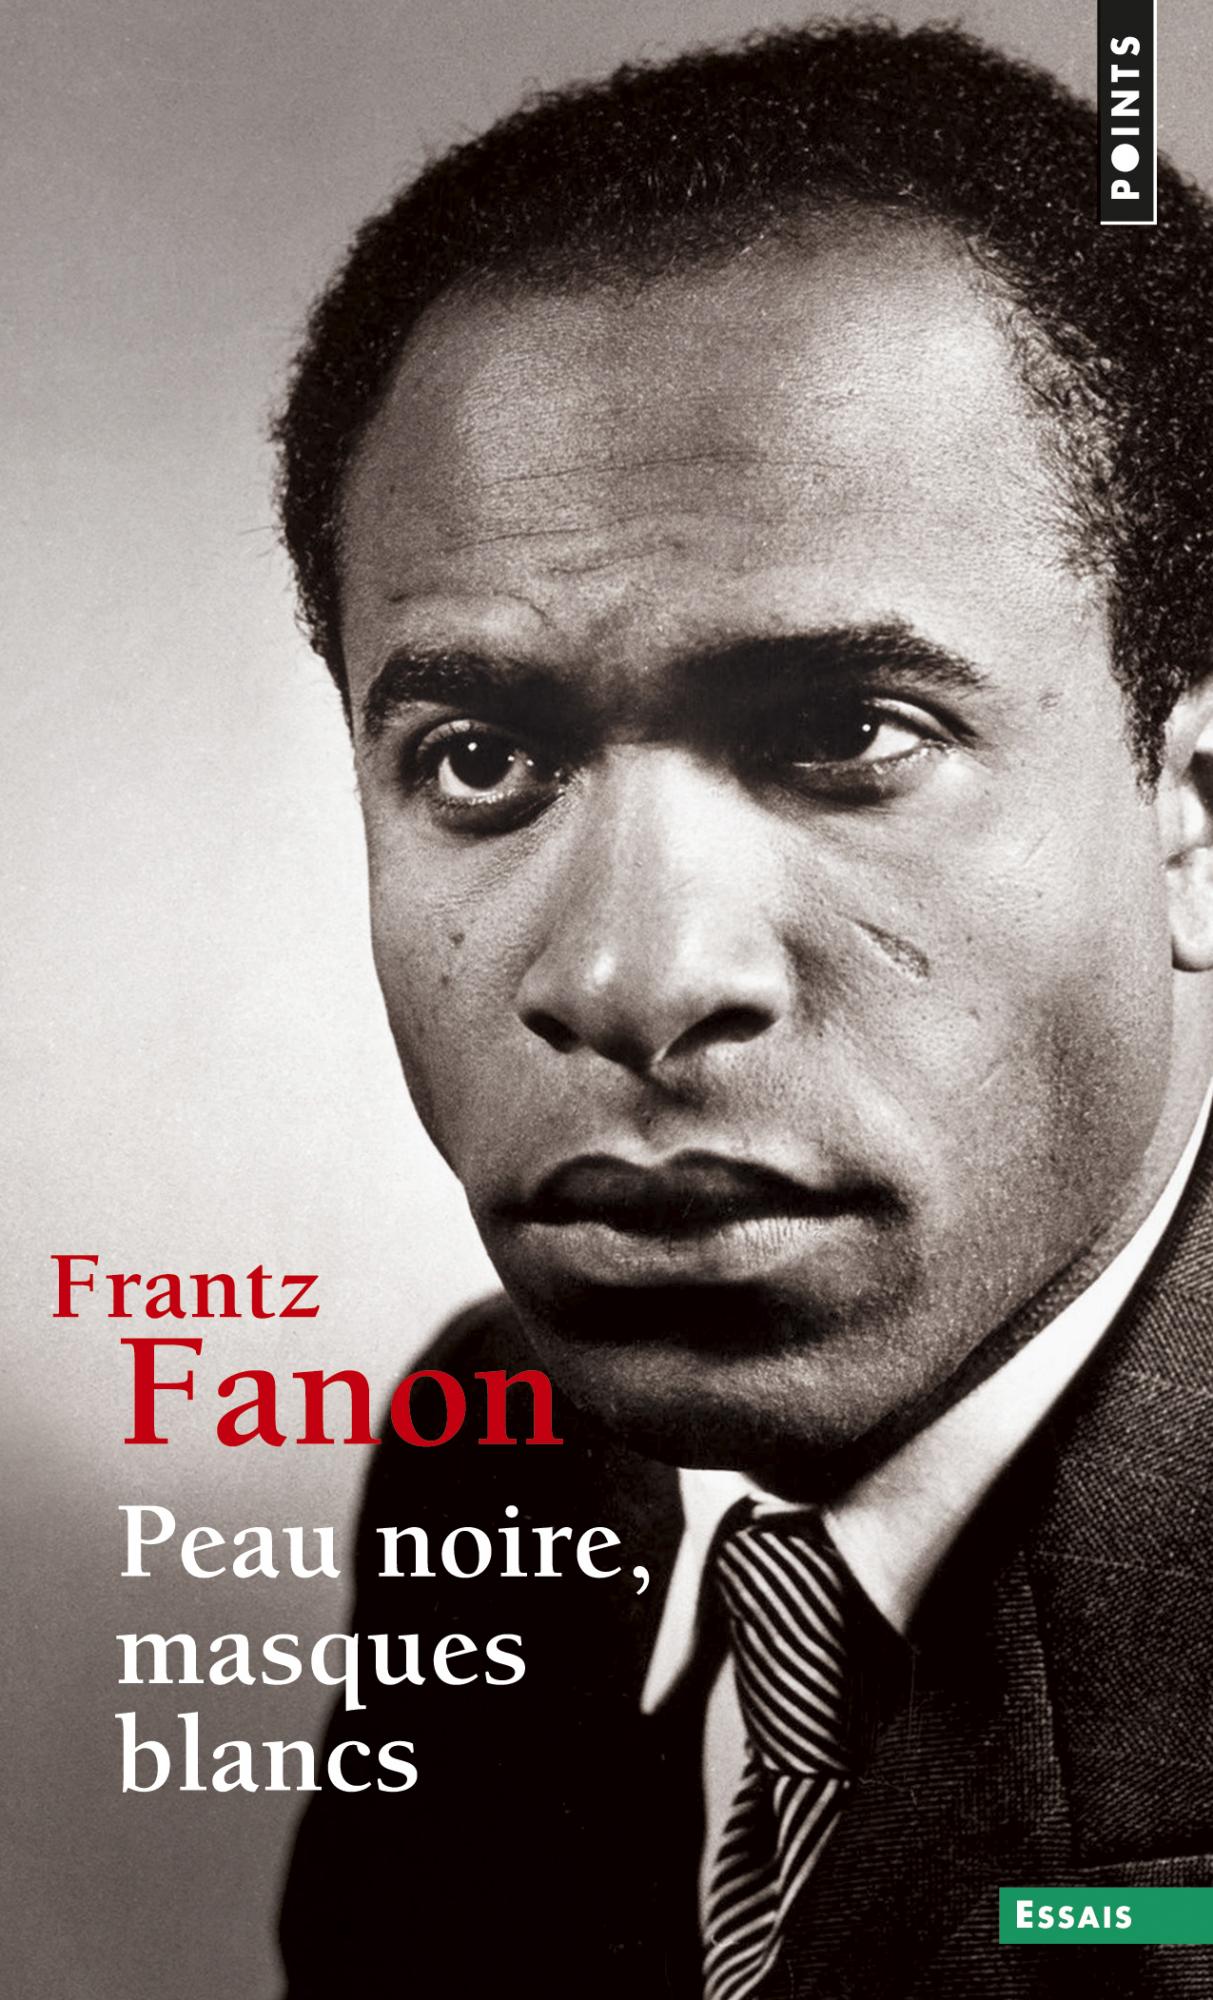 Frantz Fanon: Peau noire, masques blancs (Français language, Seuil)